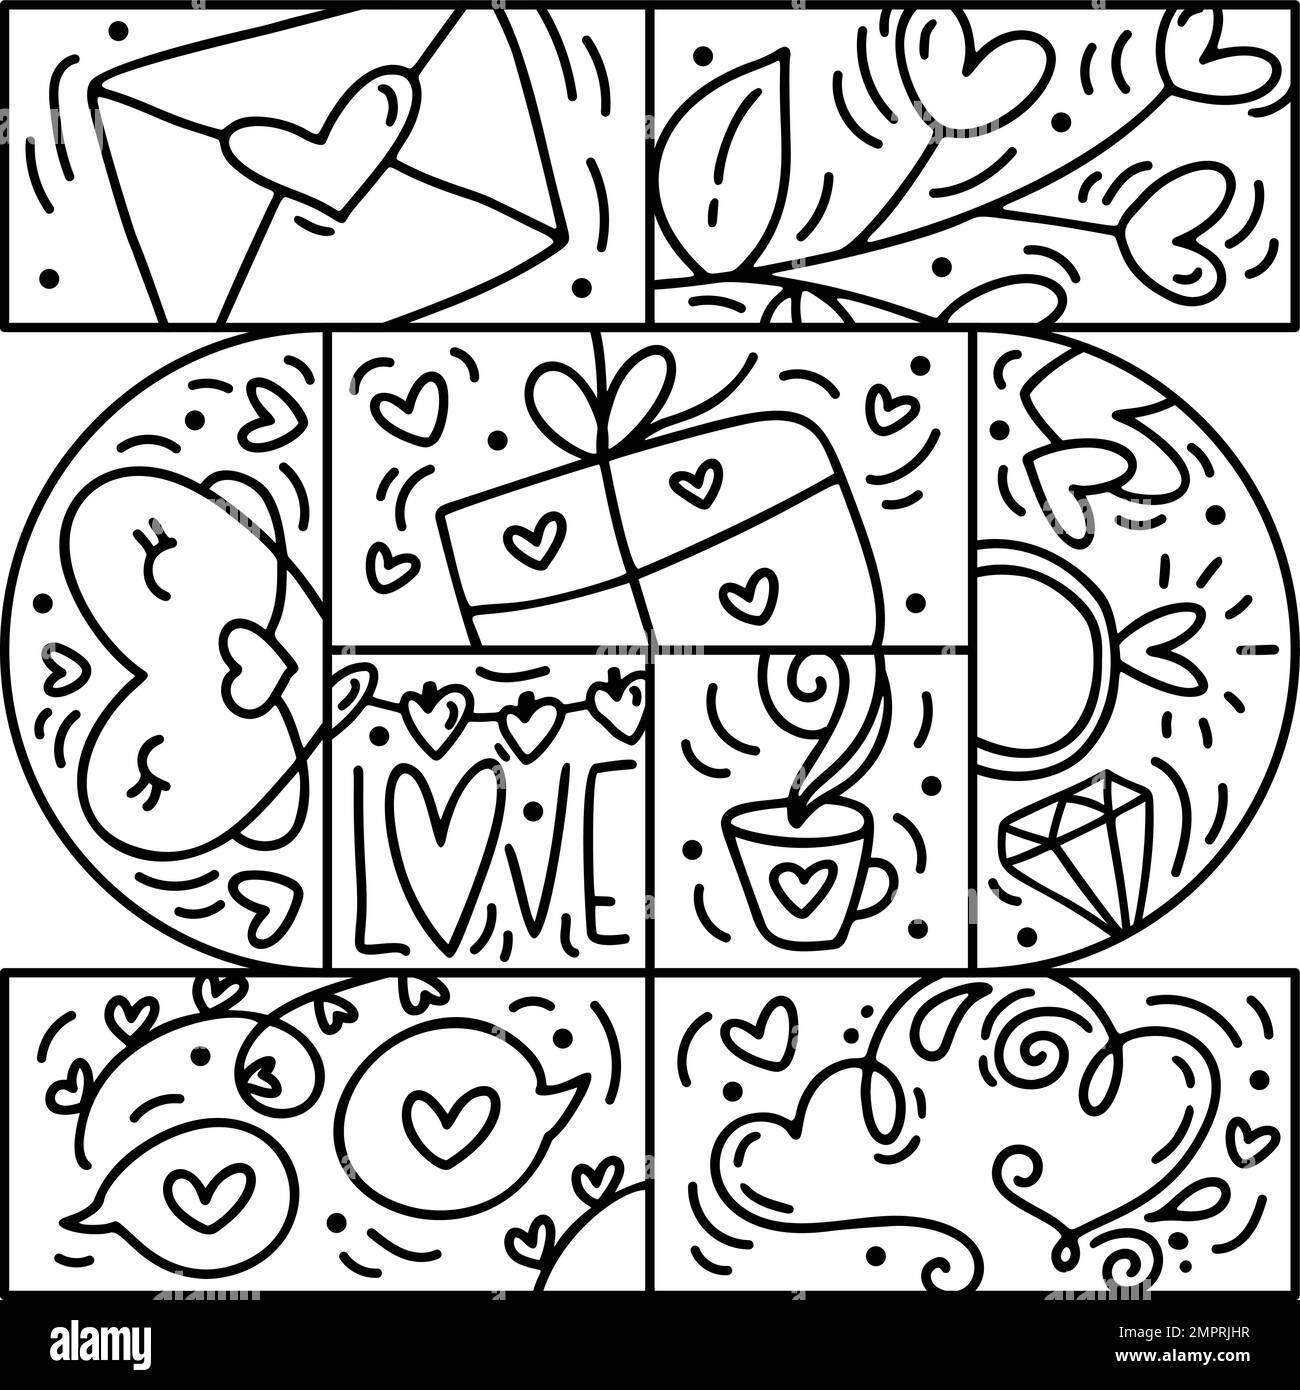 Valentinstag Logo Vektor Nahtloses Muster Geschenkbox, Umschlag, Herz und Ring. Handgezeichneter Monolin-Konstrukteur für eine romantische Grußkarte Stock Vektor